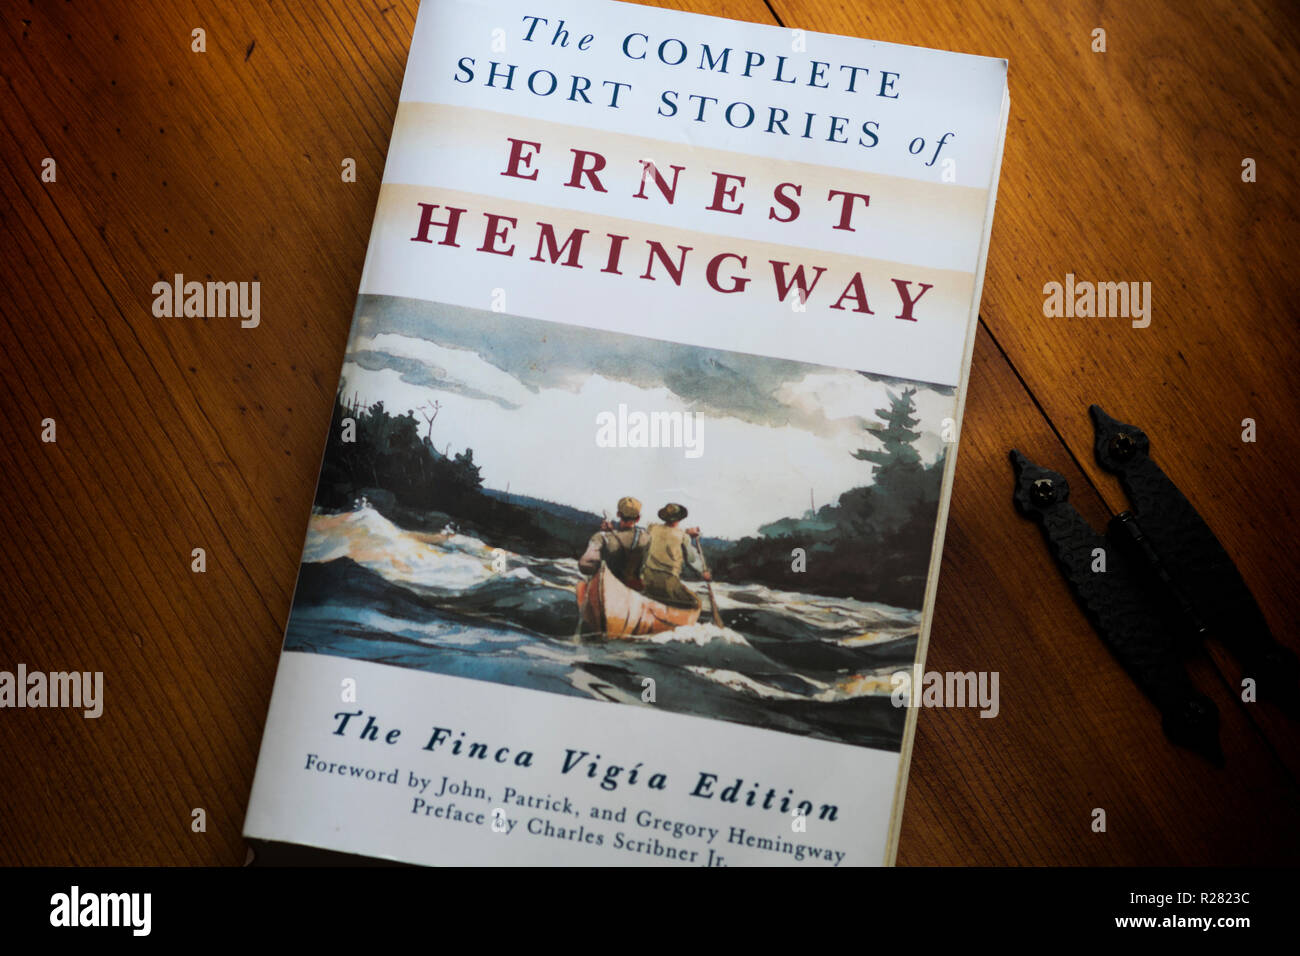 La couverture du livre pour l'ensemble des histoires courtes d'Ernest Hemingway, La Finca Vigia Edition. Banque D'Images